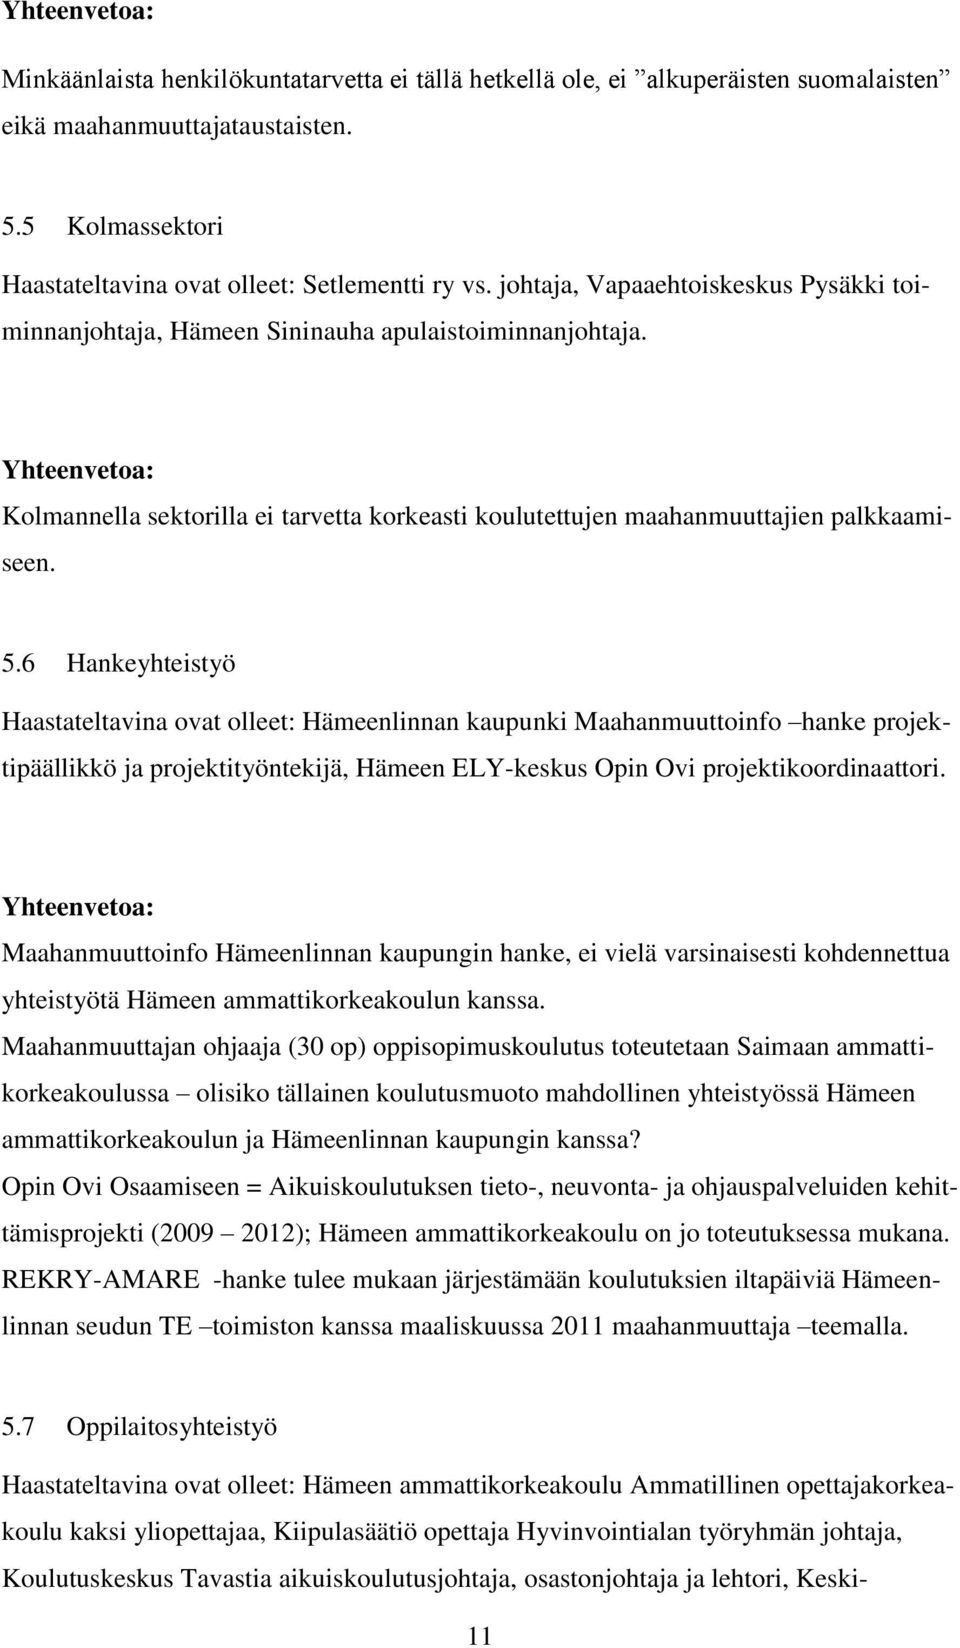 5.6 Hankeyhteistyö Haastateltavina ovat olleet: Hämeenlinnan kaupunki Maahanmuuttoinfo hanke projektipäällikkö ja projektityöntekijä, Hämeen ELY-keskus Opin Ovi projektikoordinaattori.